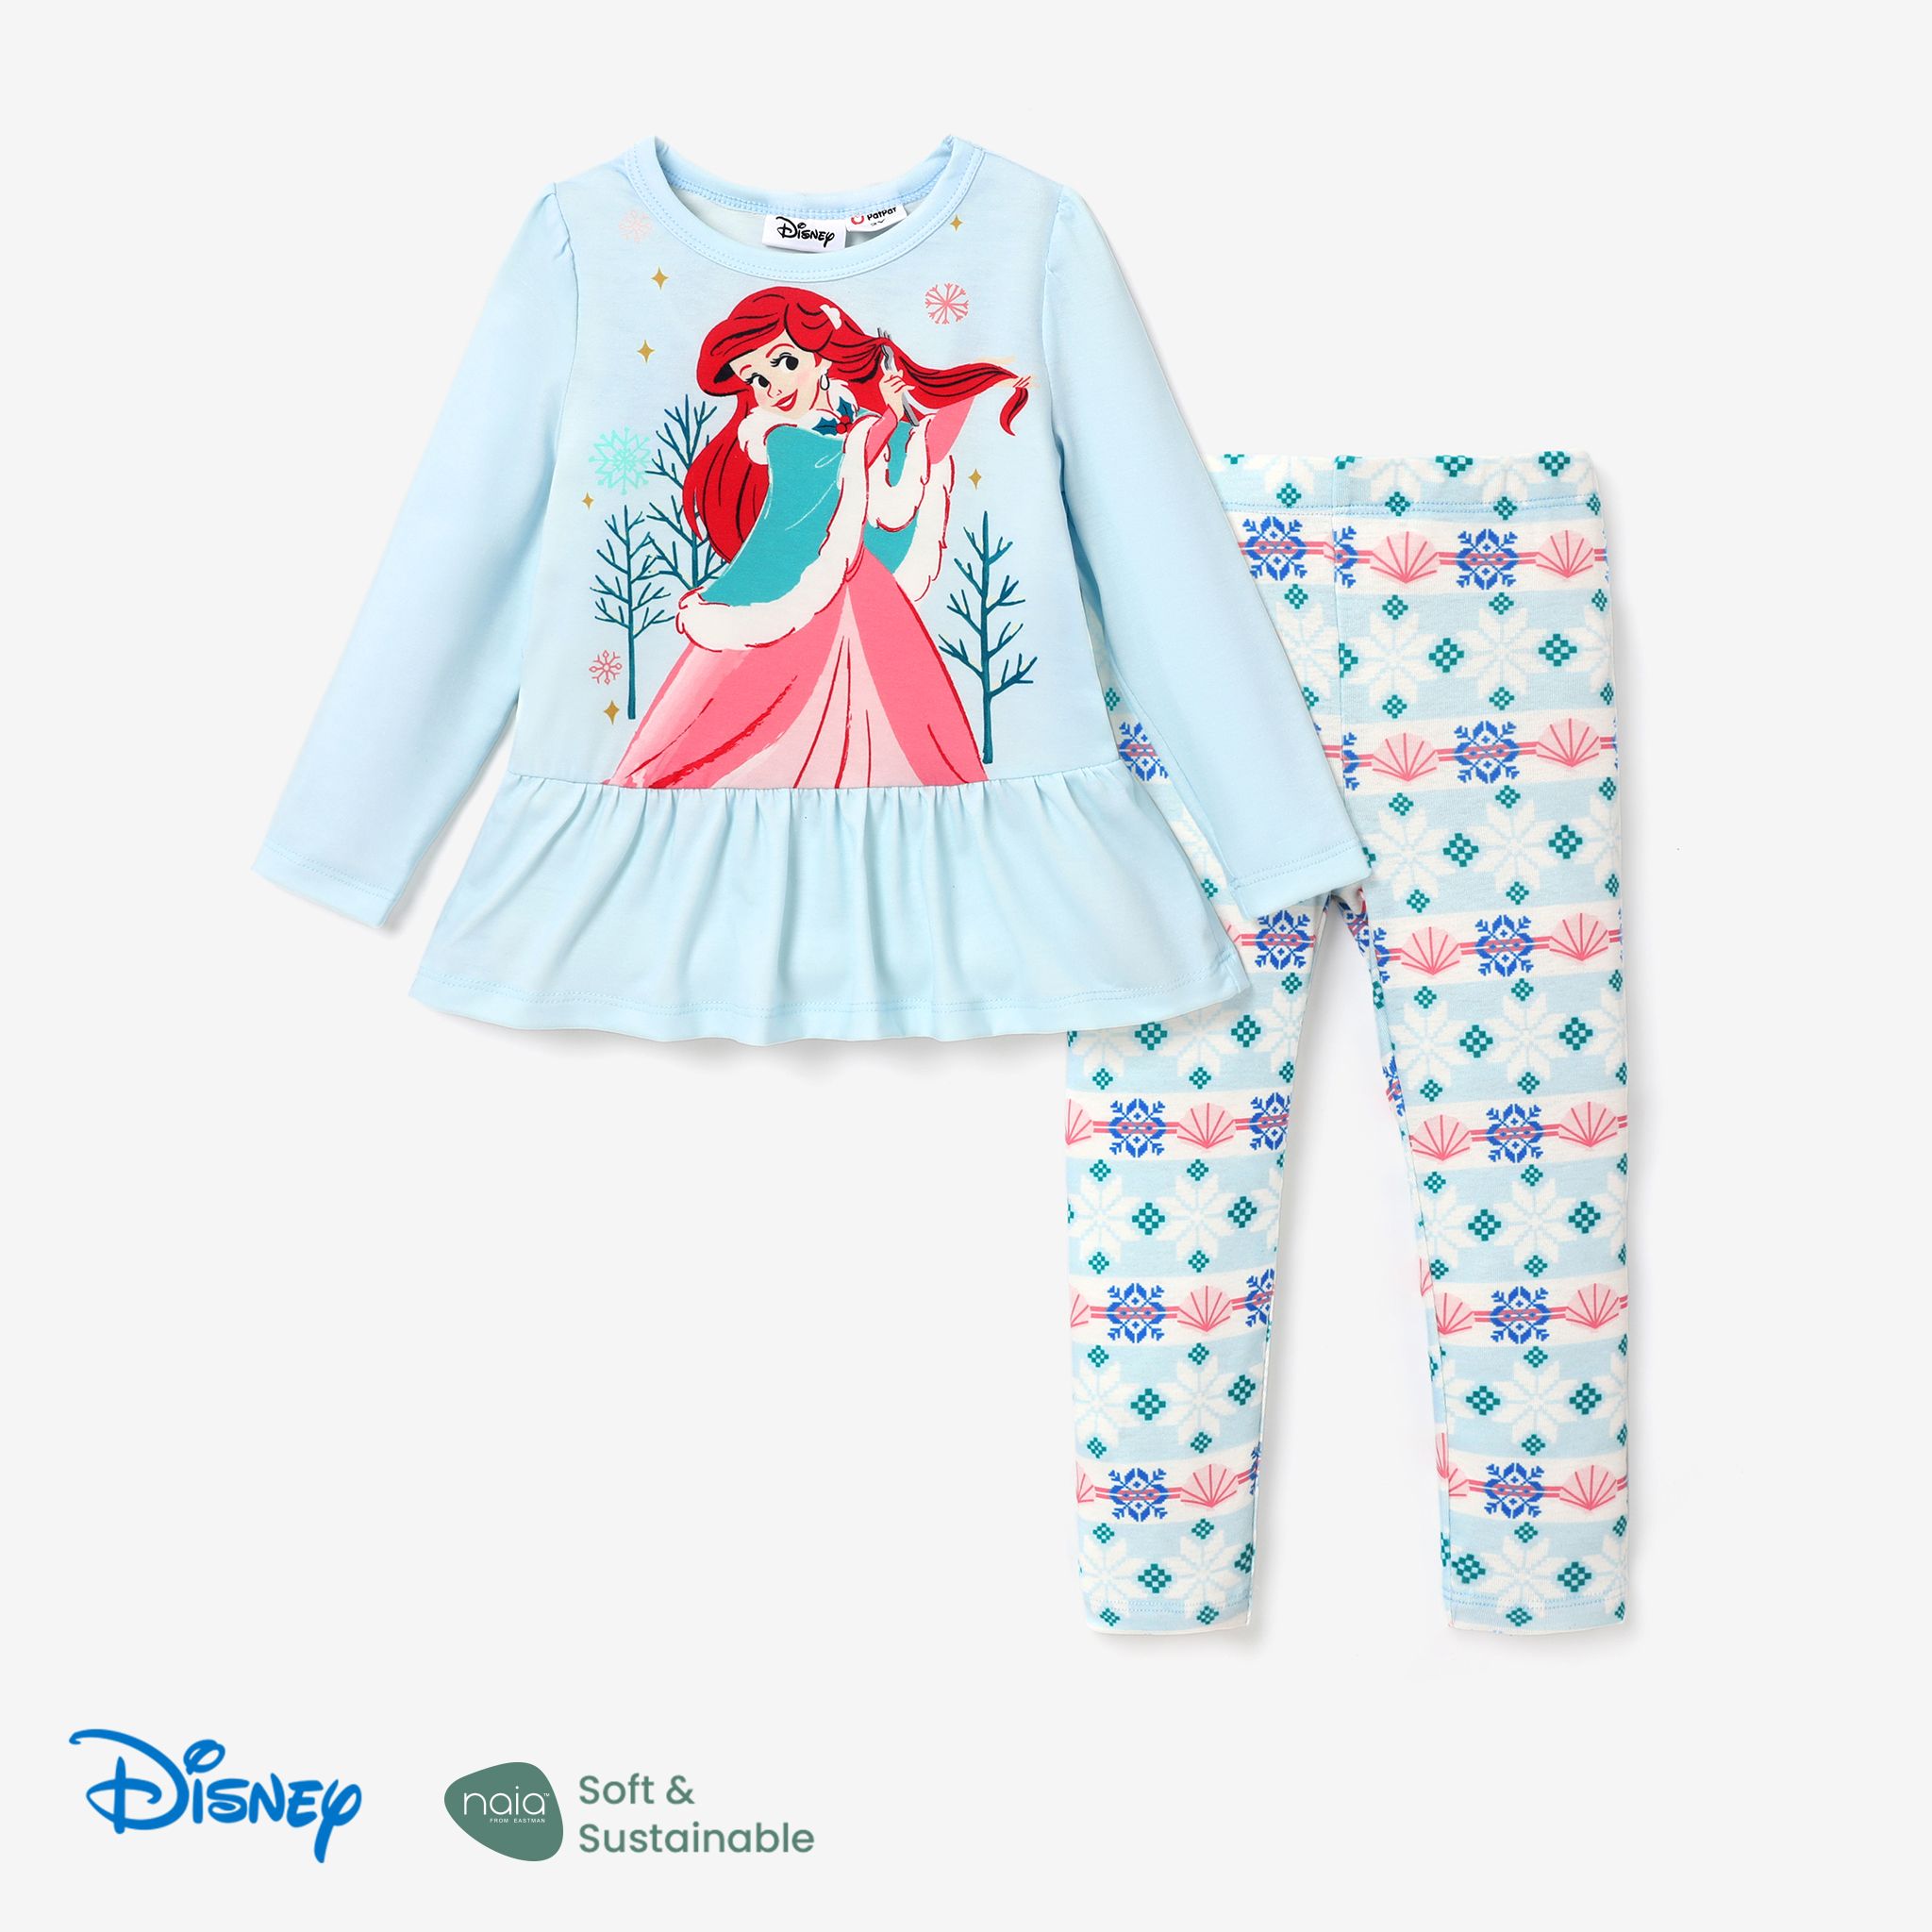 Disney Princess Toddler Girl 2pcs Naiaâ¢ Character Print Peplum Long-sleeve Tee And Snow Flakes Pants Set